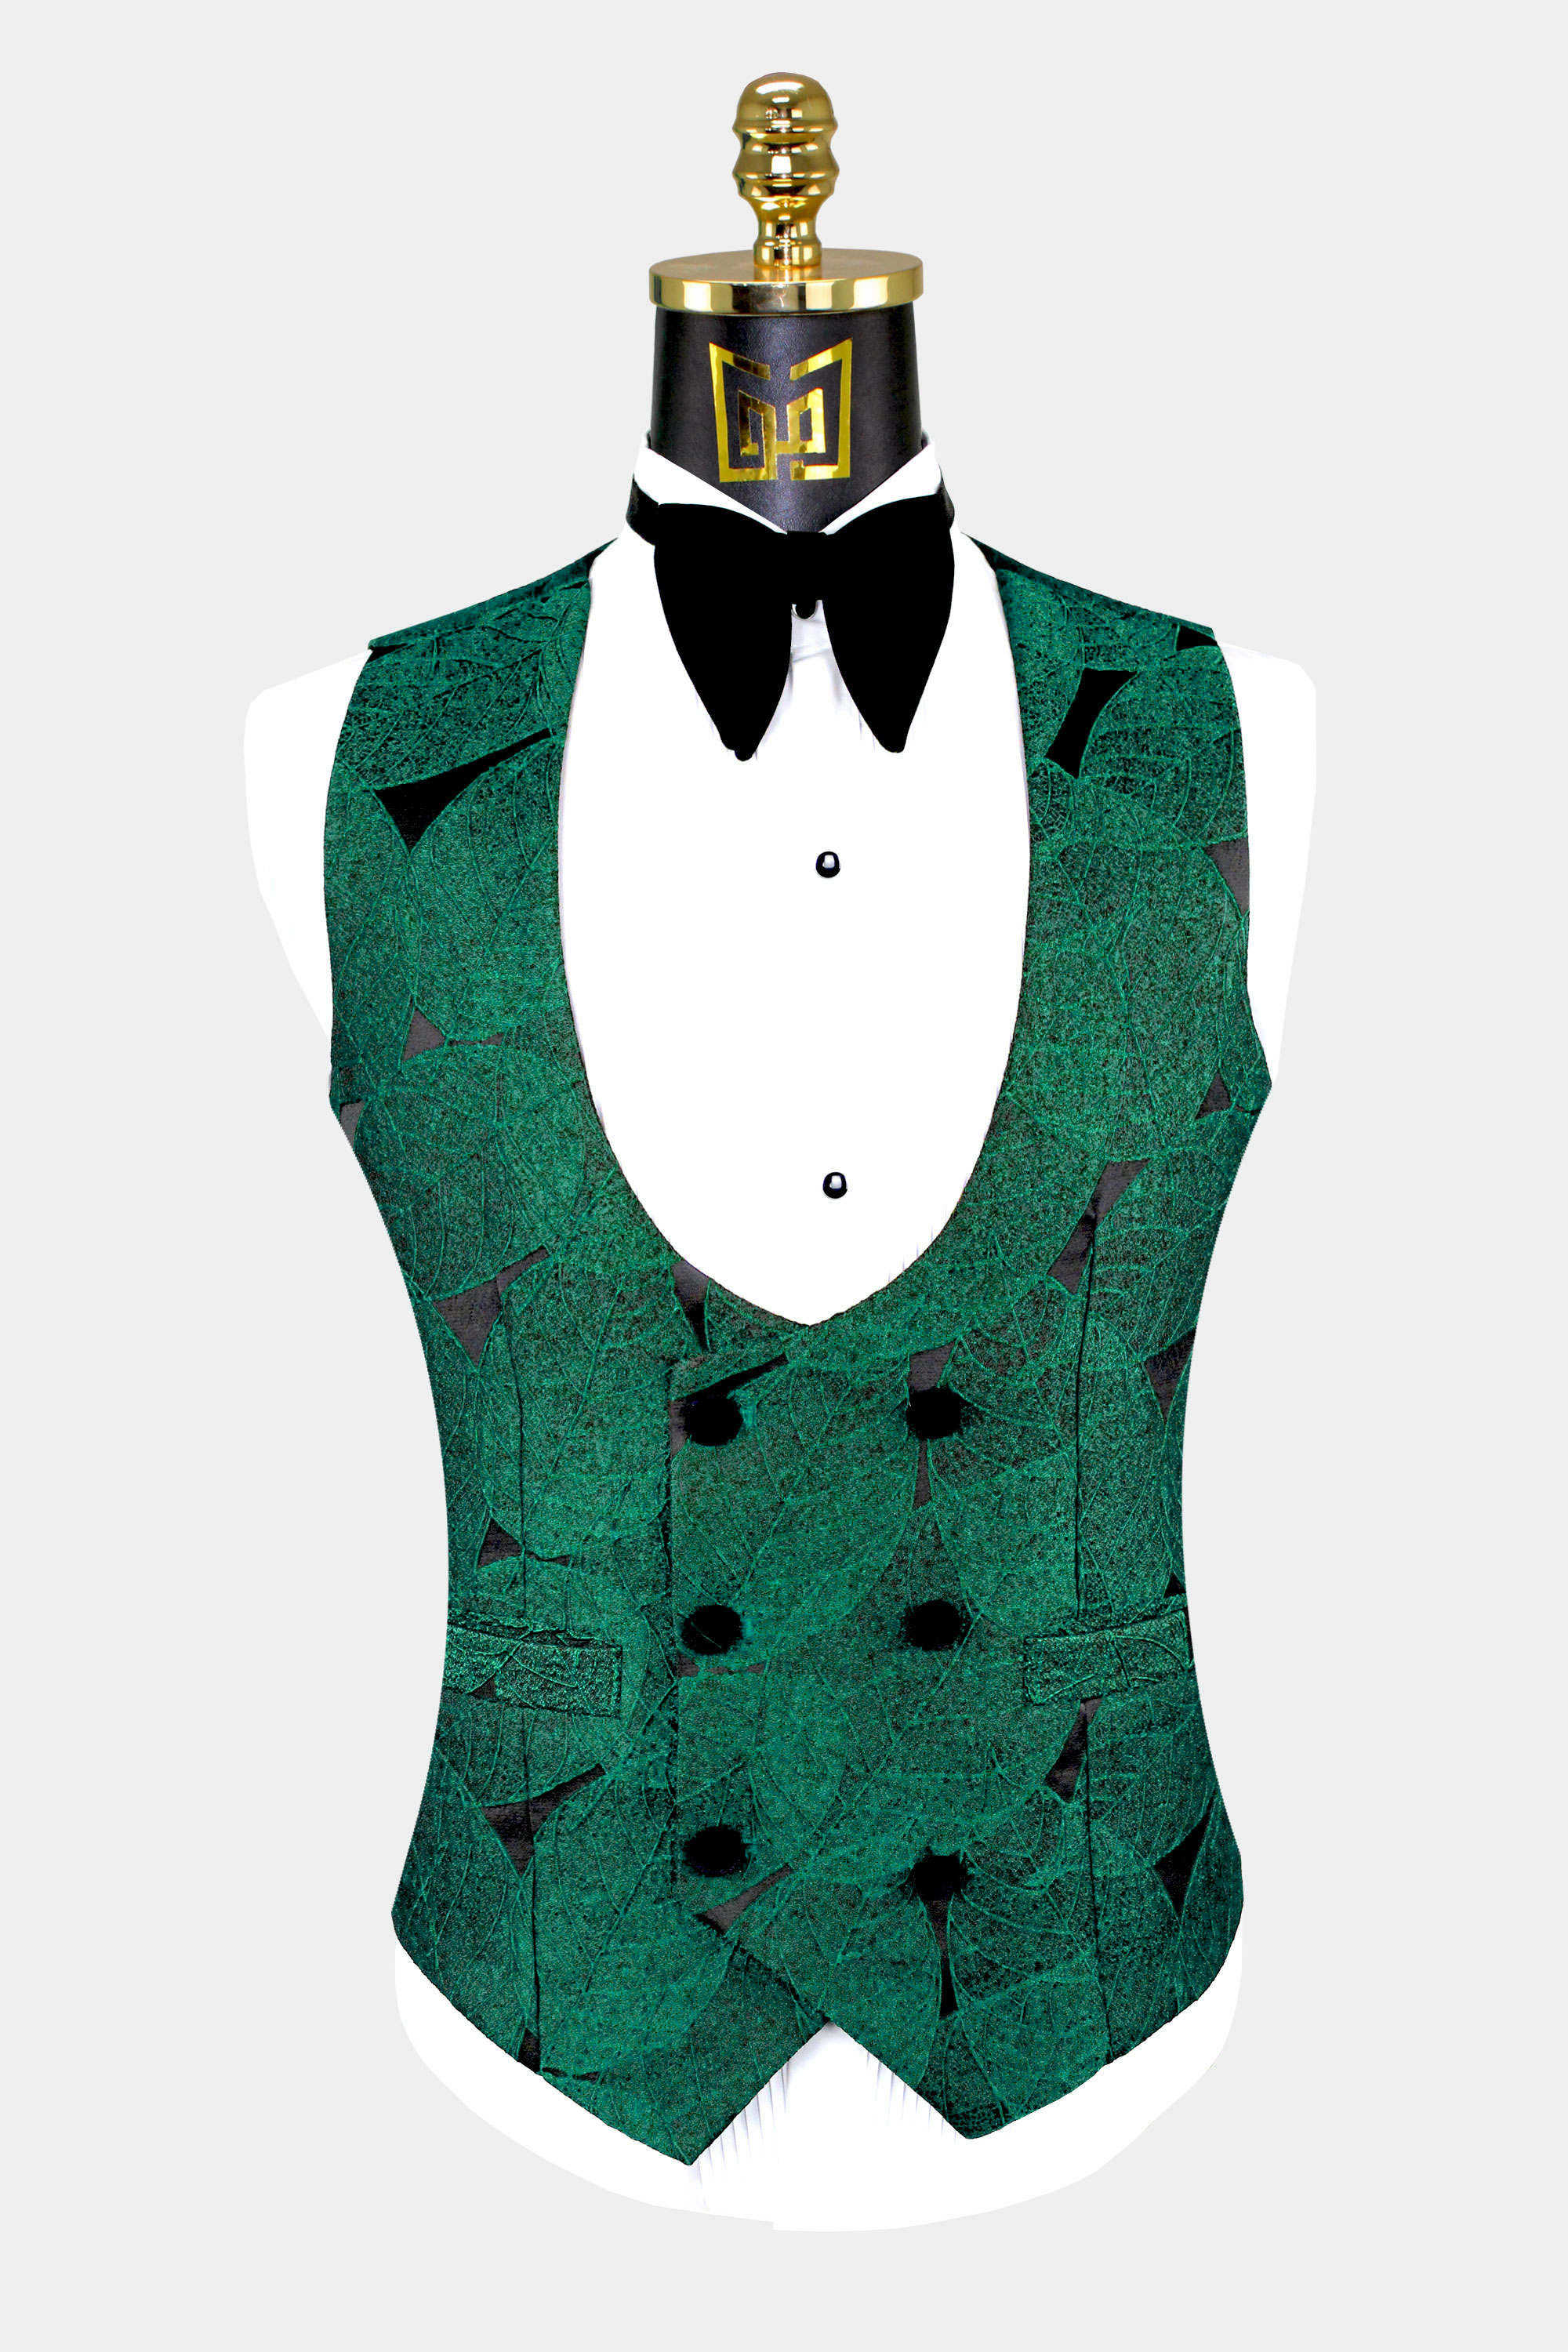 Emerald-Green-Tuxedo-Vest-from-Gentlemansguru.com